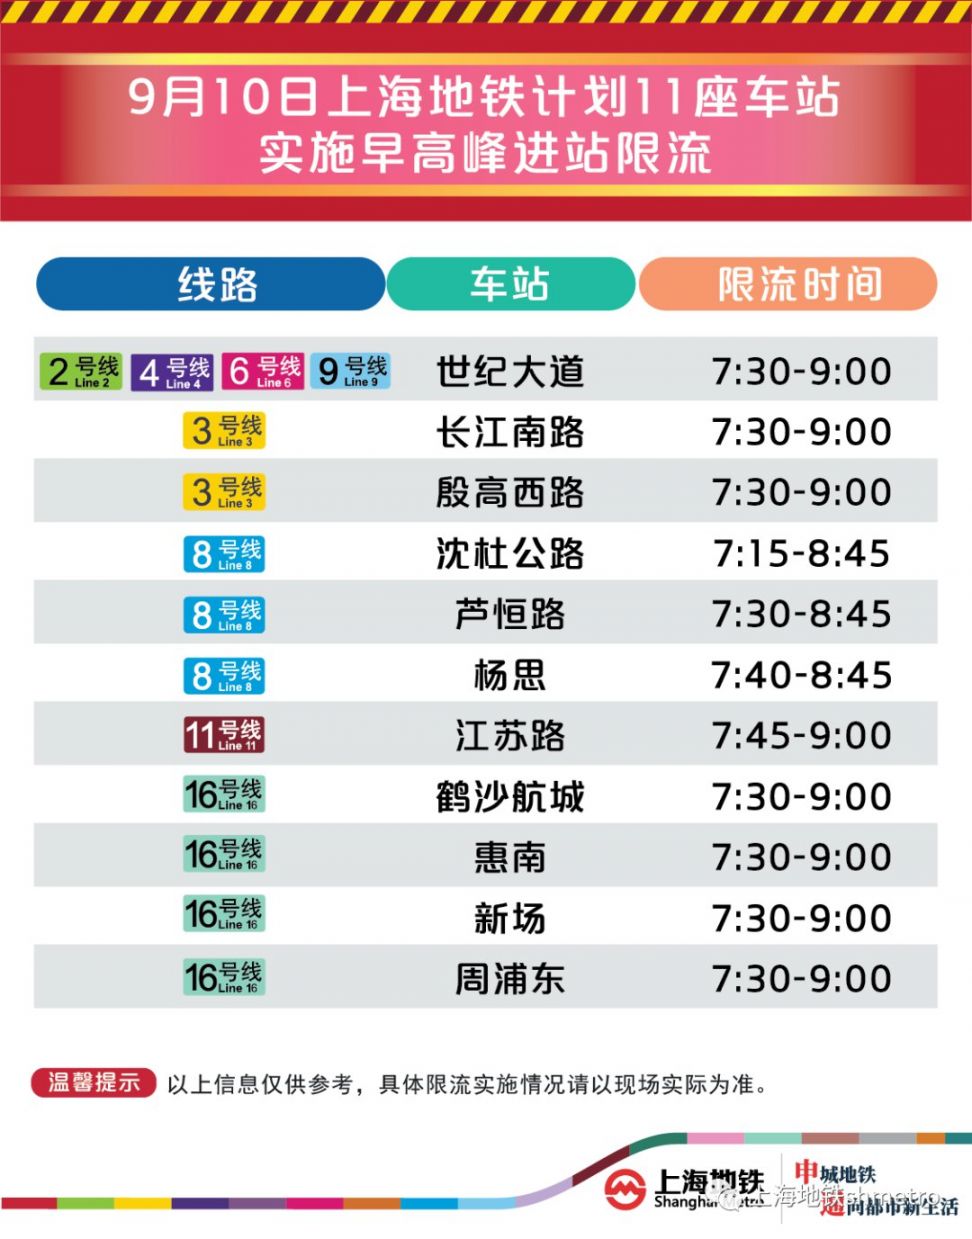 9月10日上海11座地铁站早高峰限流(附舒适度预告)